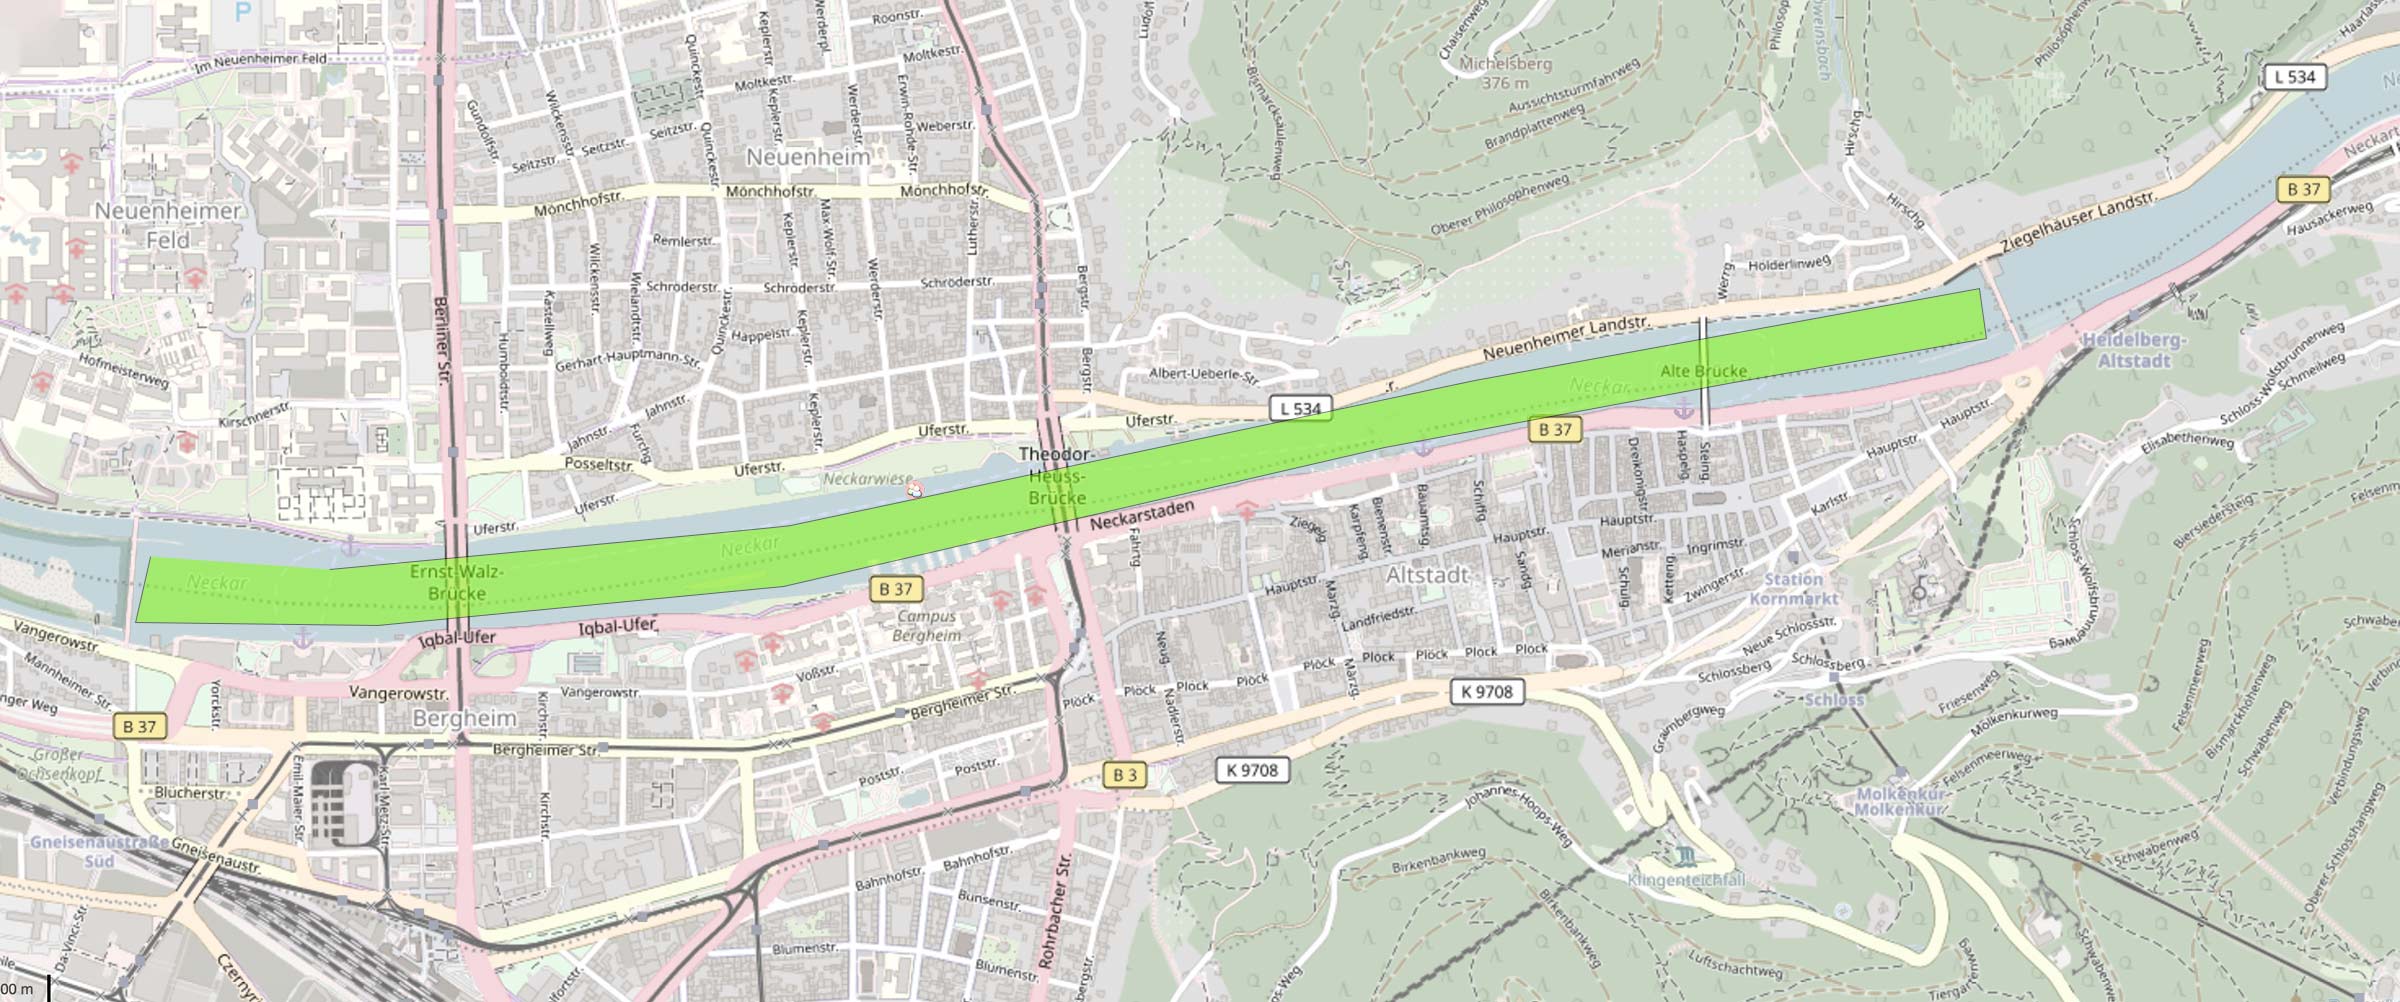 Die Karte zeigt den möglichen Verlauf einer Bootstour von Riverboat am Neckar in Heidelberg laut FAQ